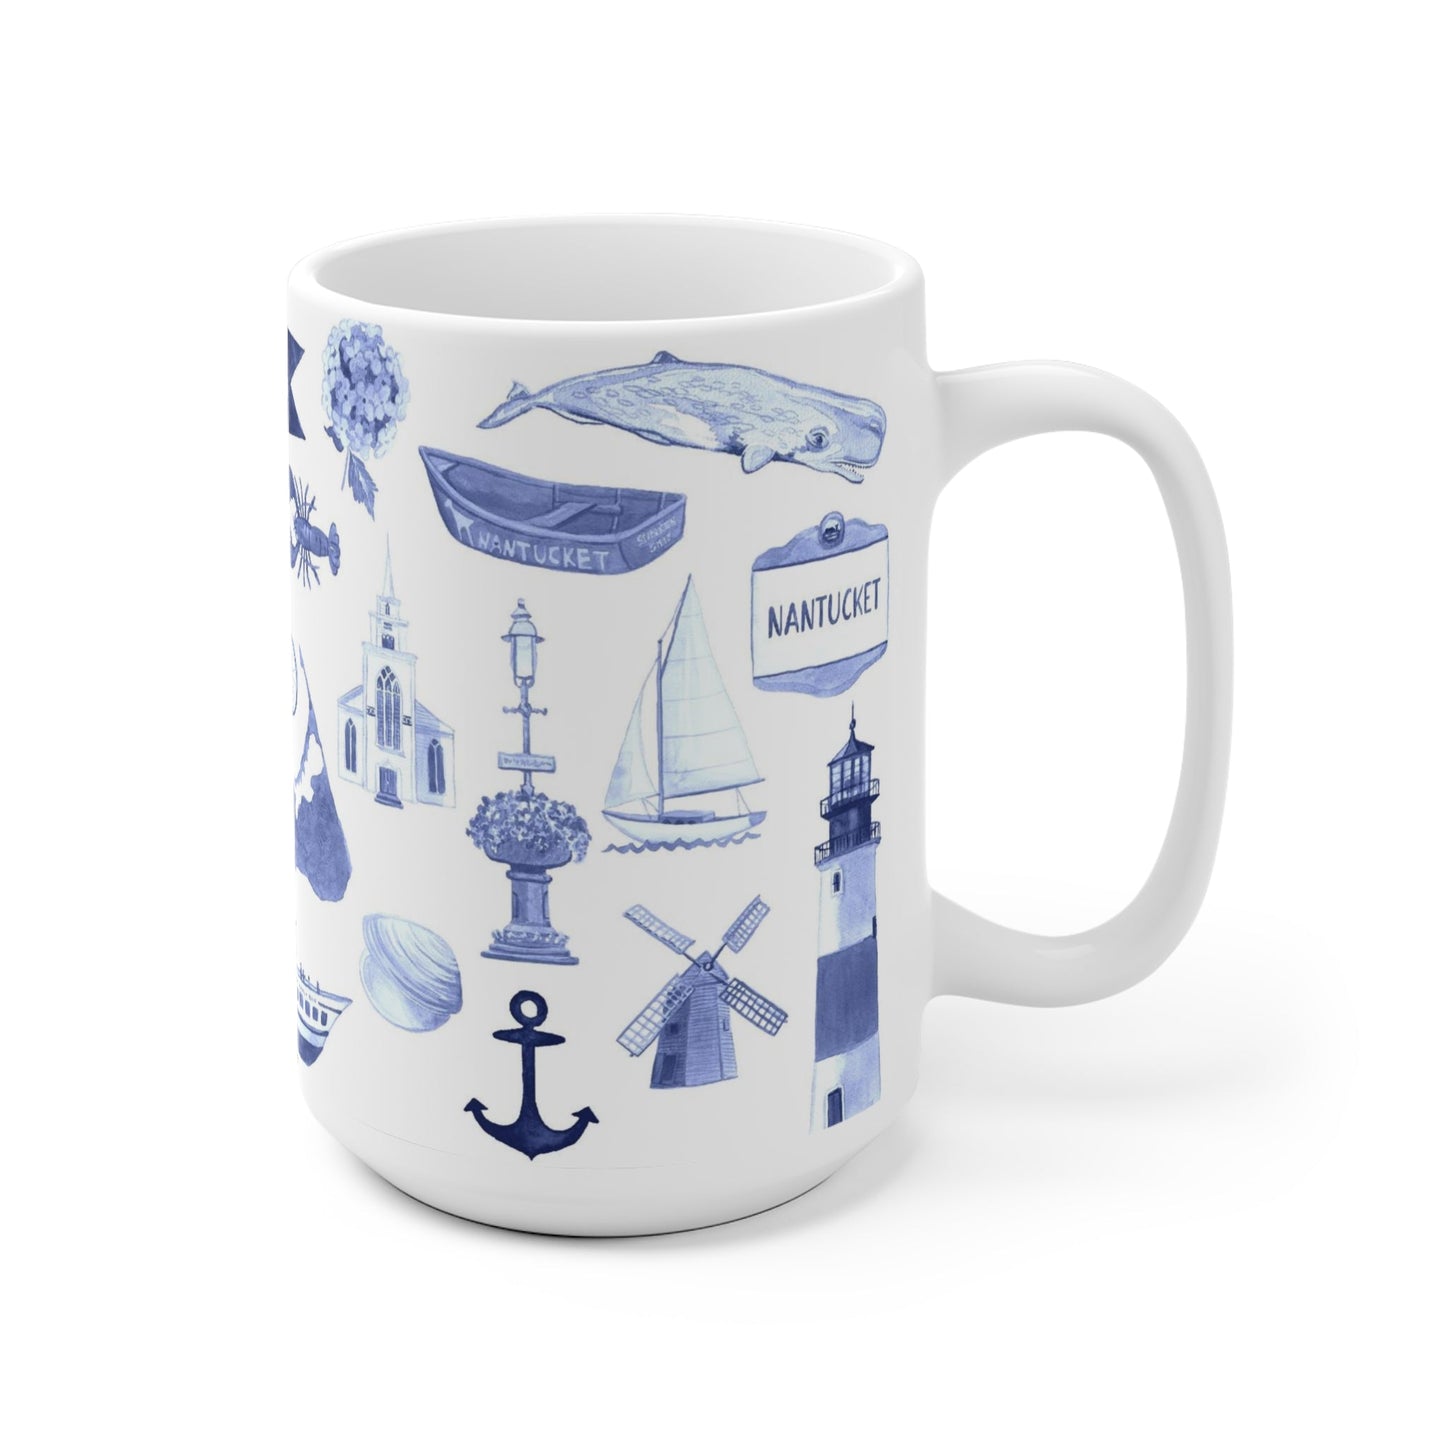 Nantucket Forever! Toile Ceramic Mug